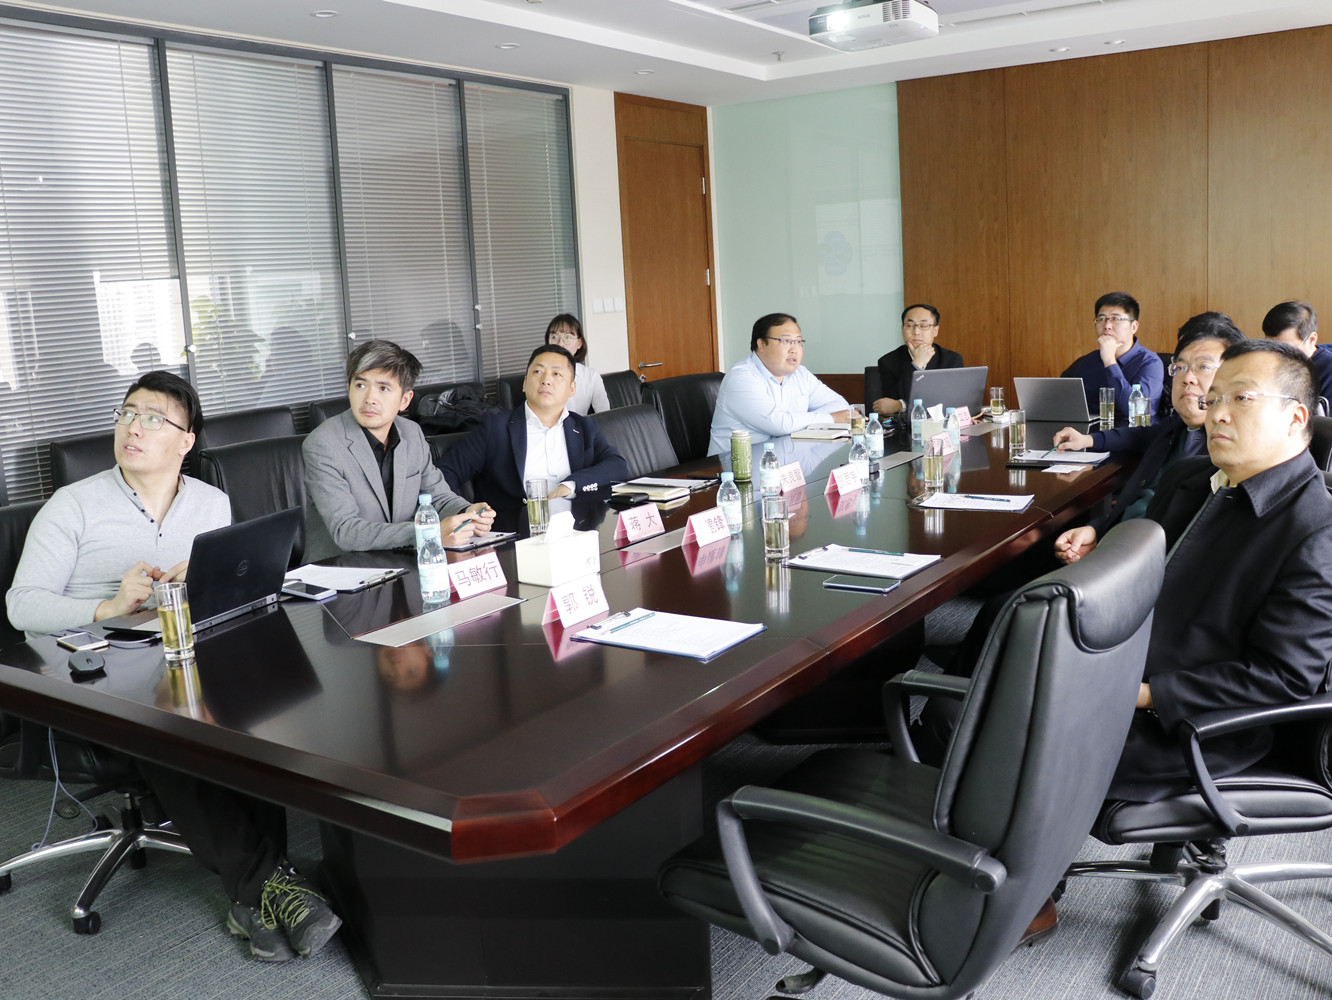 文创简讯 | 襄垣县人民政府领导到访清控文创公司参加文旅项目座谈会